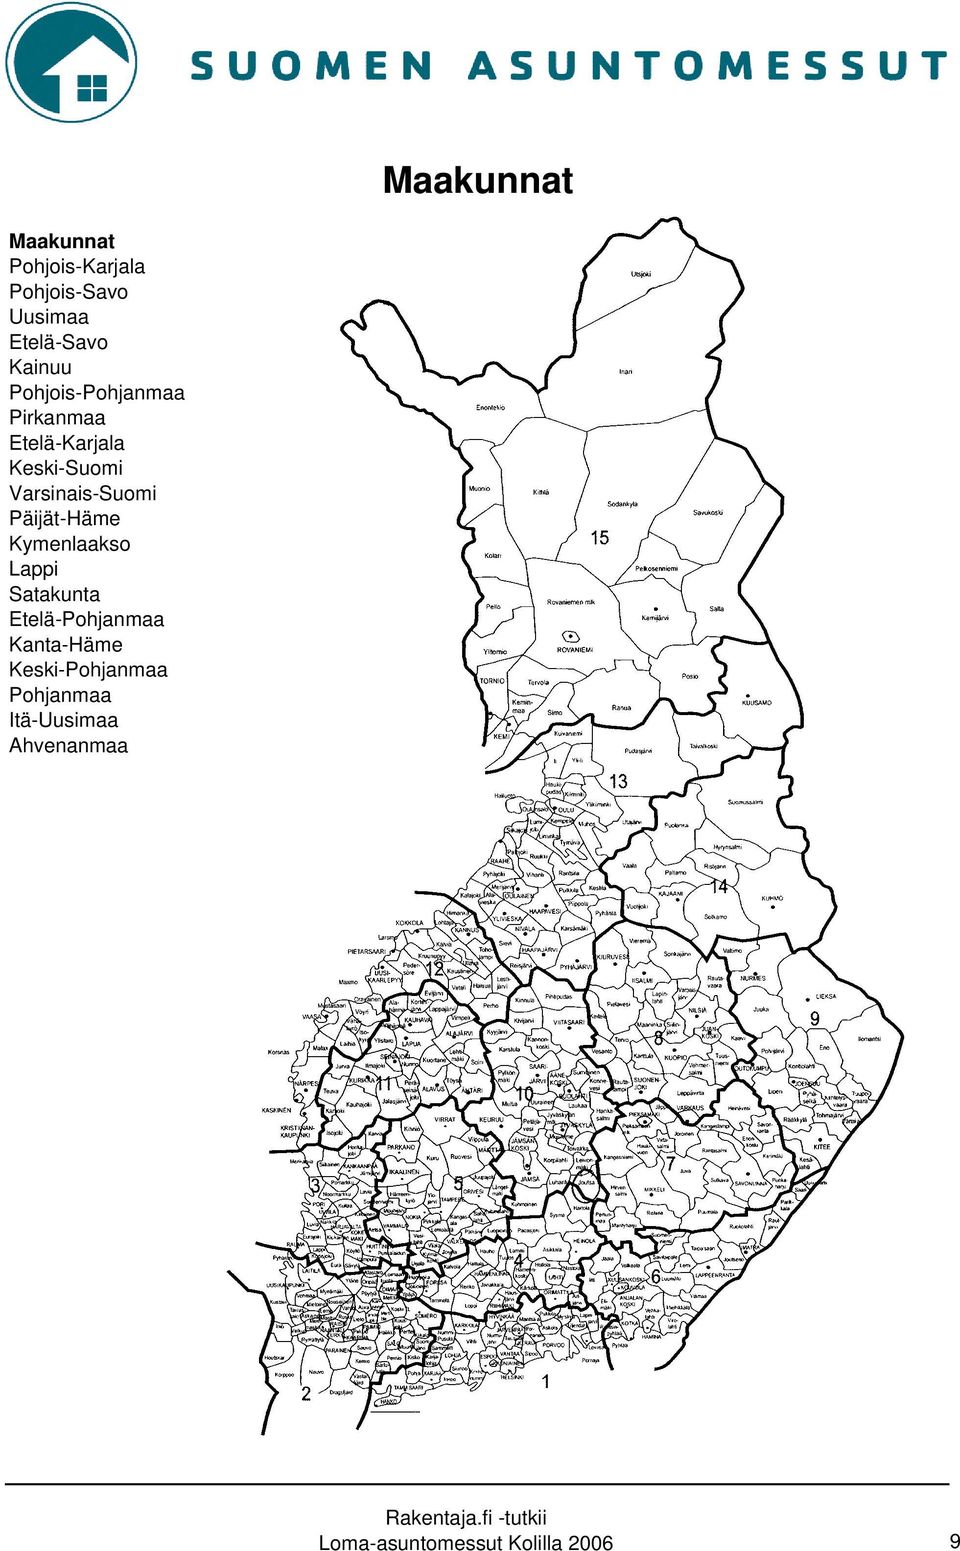 Varsinais-Suomi Päijät-Häme Kymenlaakso Lappi Satakunta Etelä-Pohjanmaa